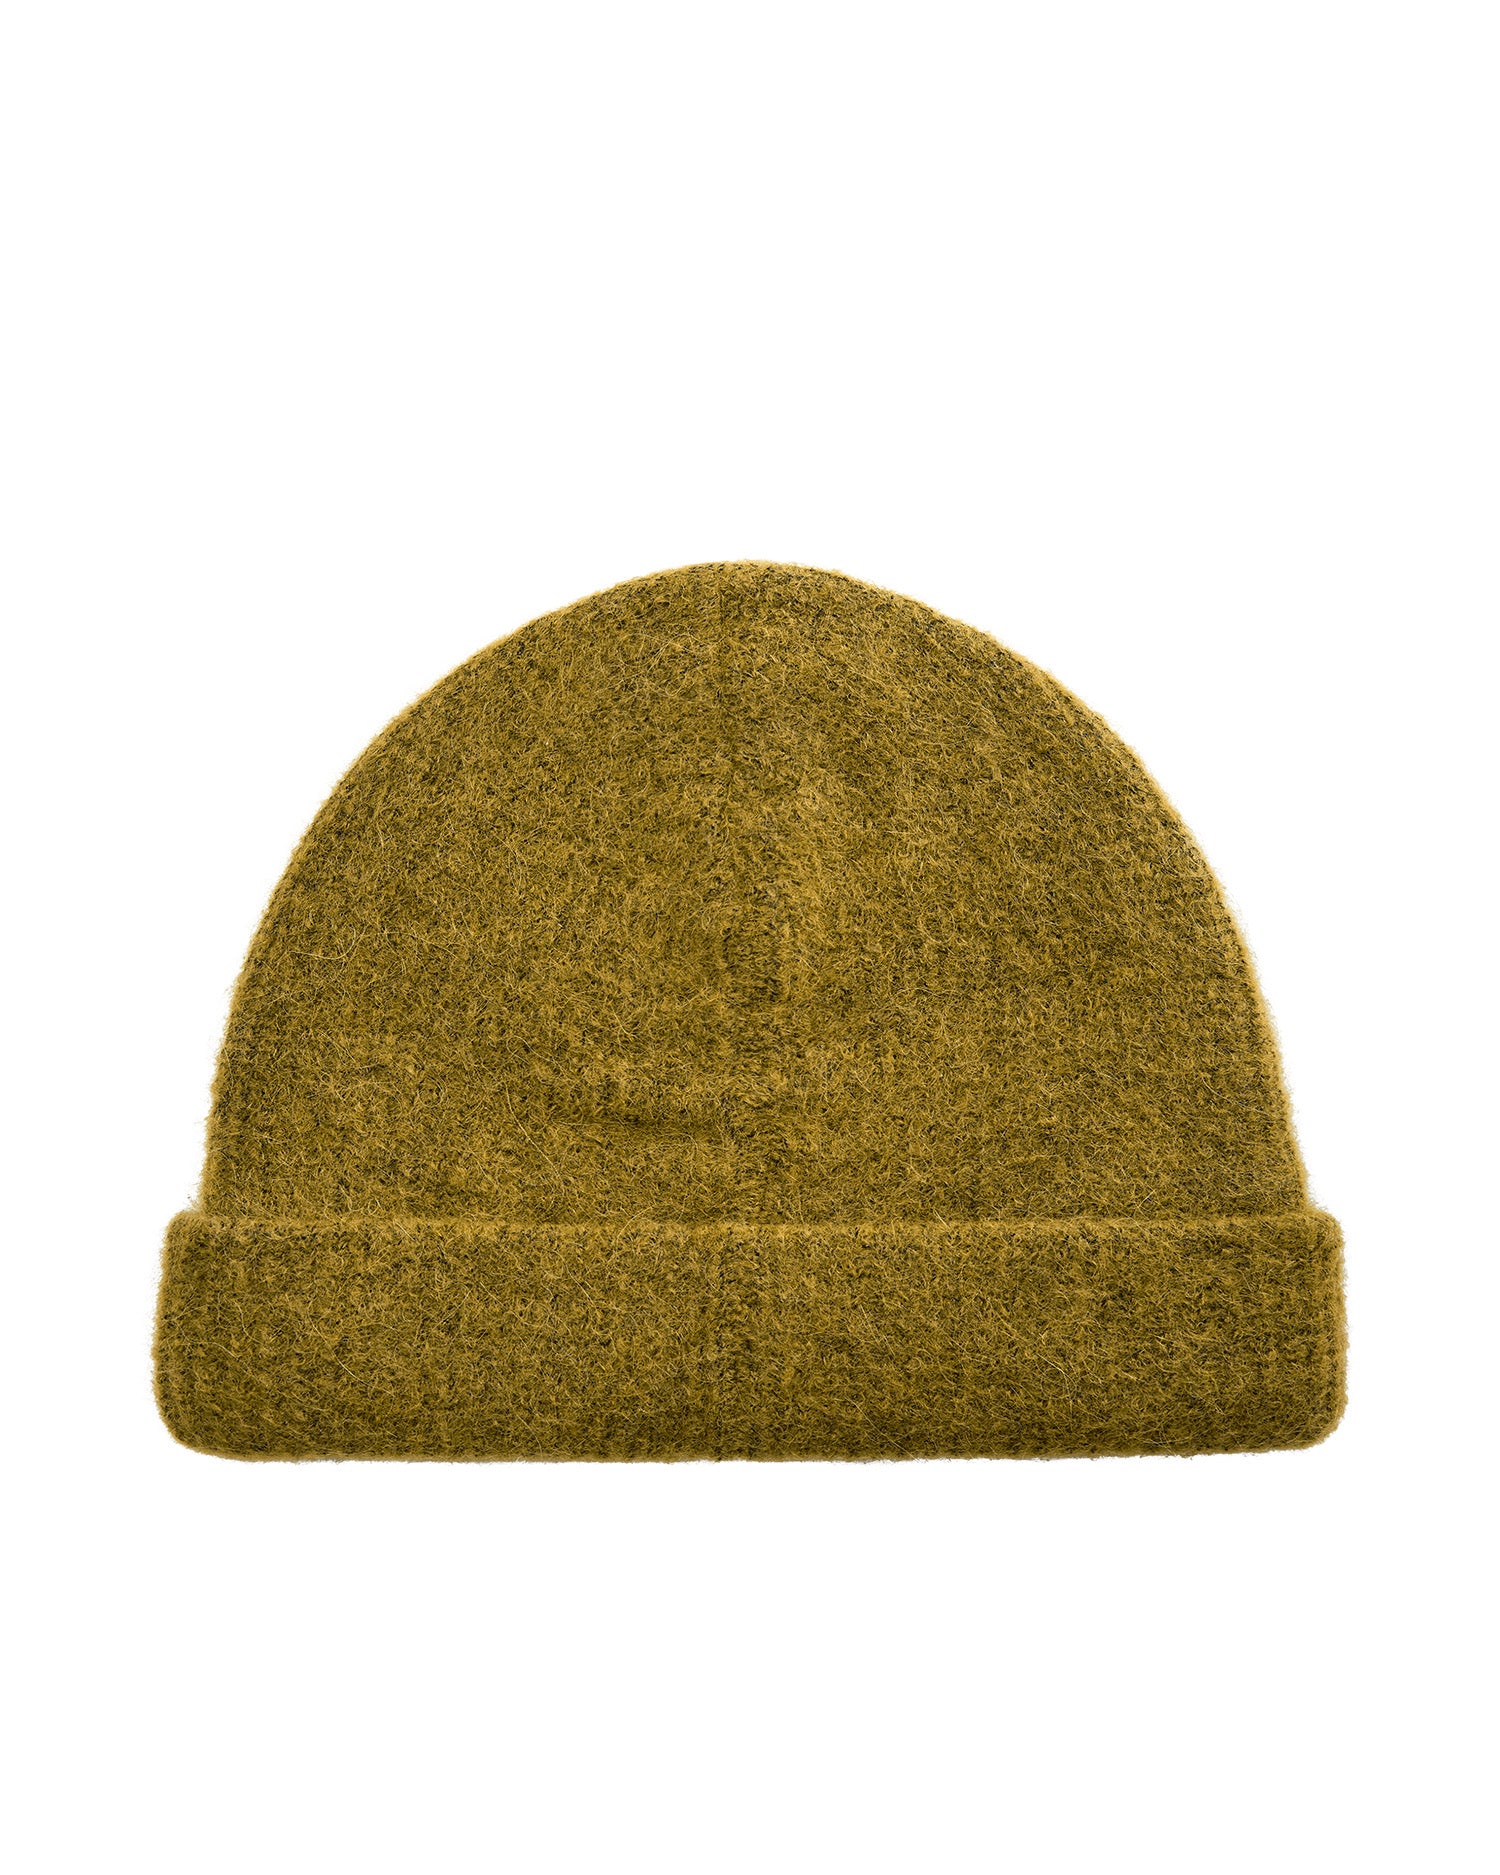 MMThora Knit Hat - Fir Green 1